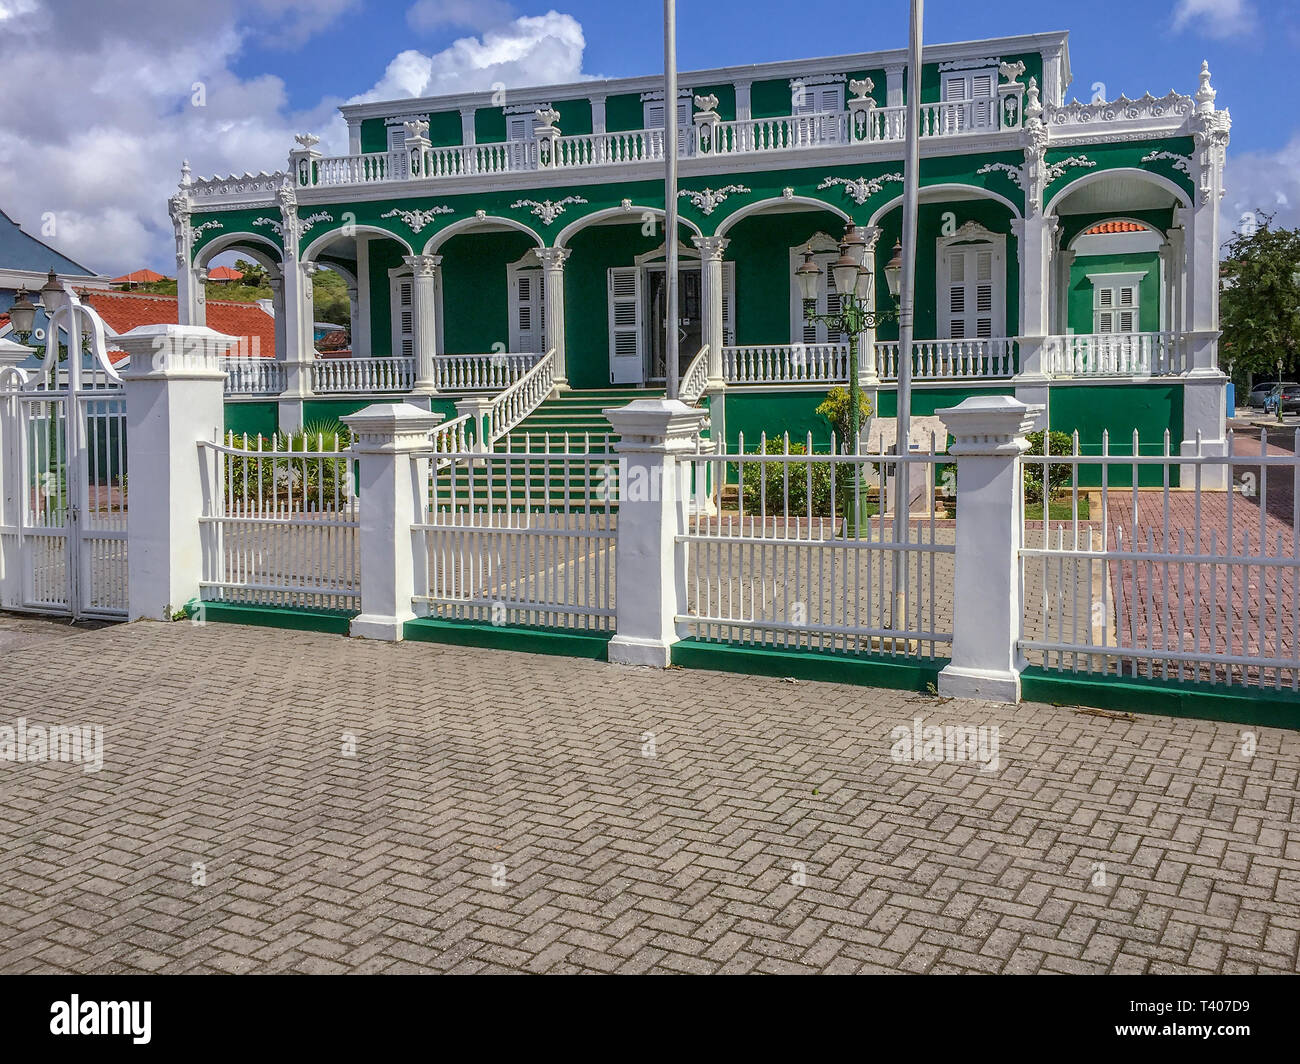 Willemstad la capitale de Curaçao, une île des Caraïbes. L'image de la bibliothèque nationale , le gâteau de mariage. Banque D'Images